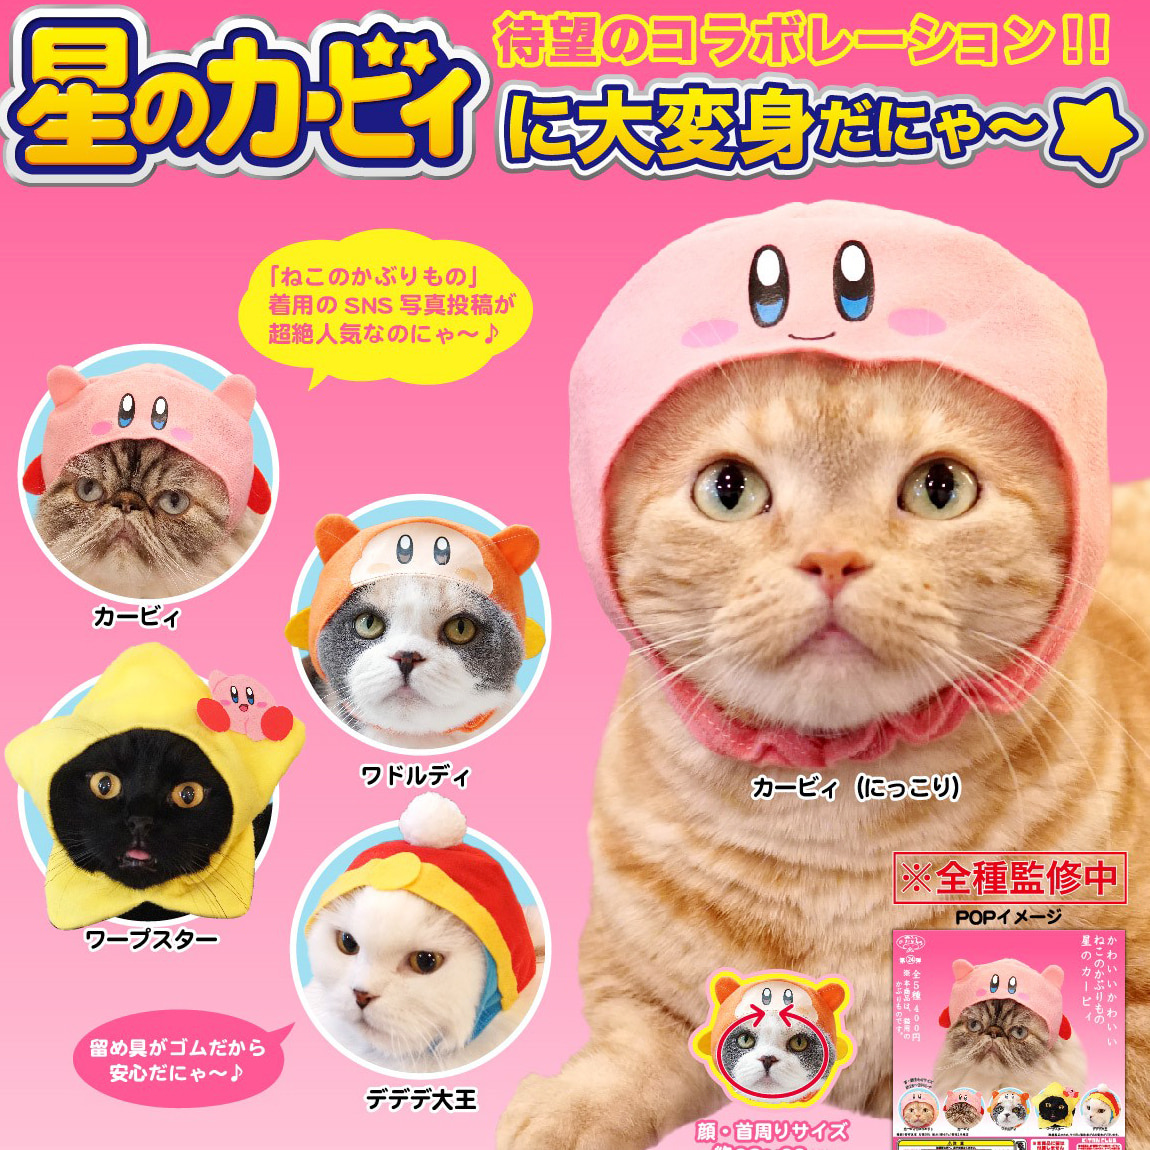 귀여운 고양이 모자 코스튬 가챠 : 별의 커비샐러드마켓